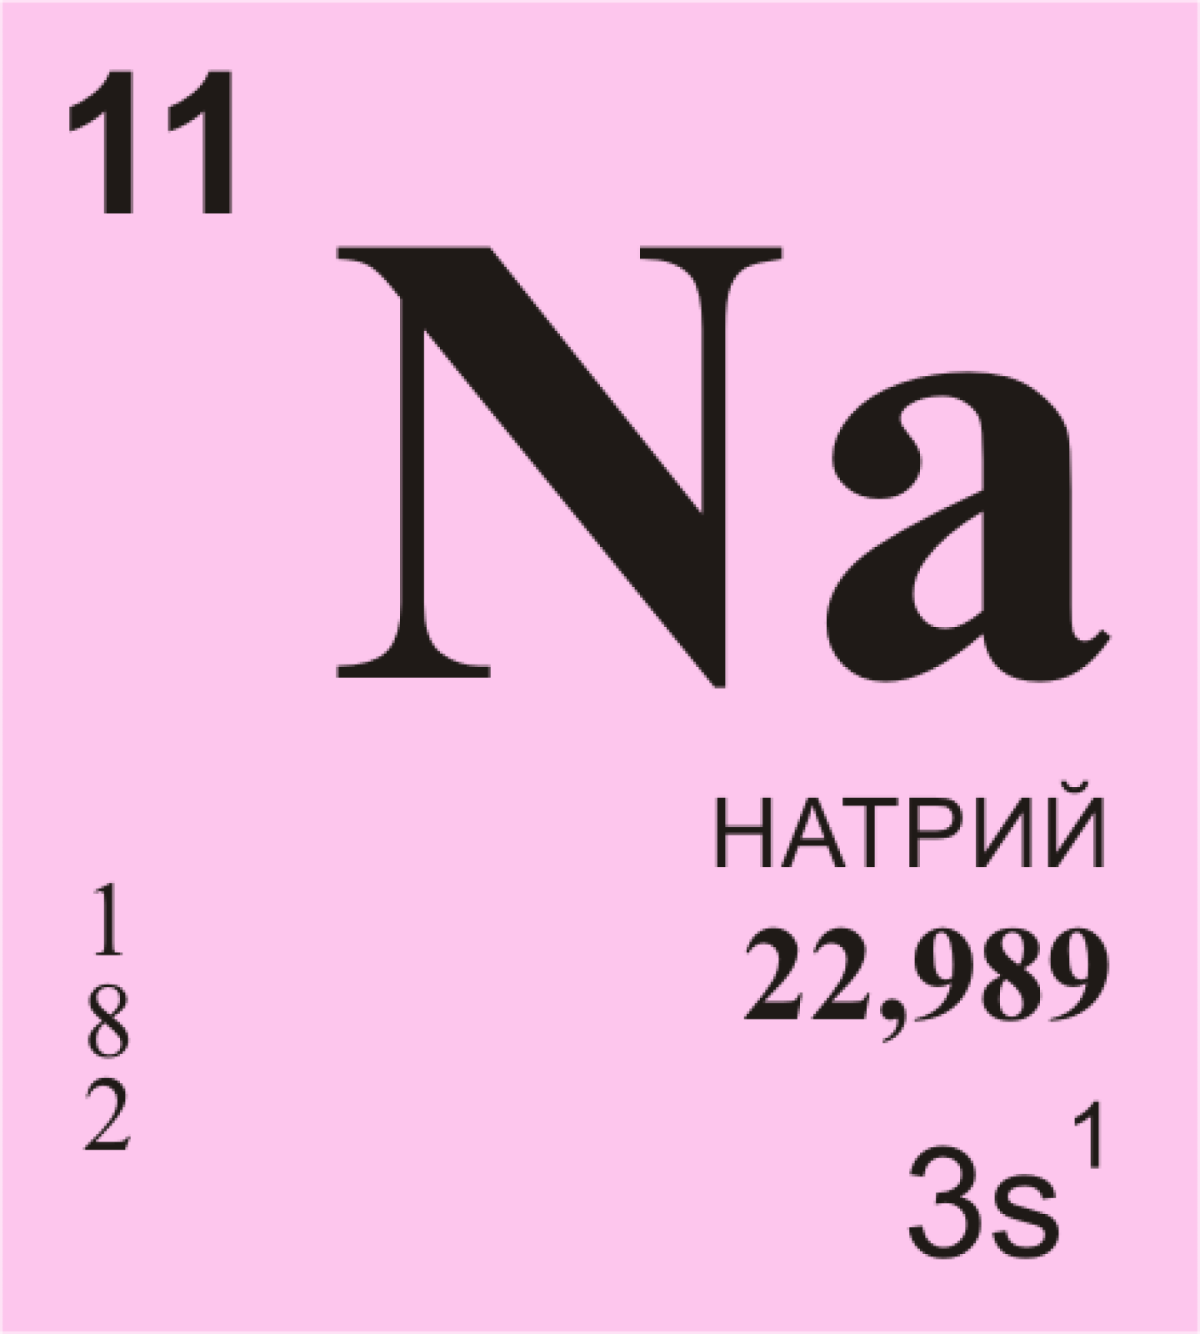 Карточки по химии 8 класс химические элементы Менделеева. Натрий элемент таблицы Менделеева. Натрий химический элемент обозначение. Химические элементы таблицы Менделеева карточки натрий. Натрий о3